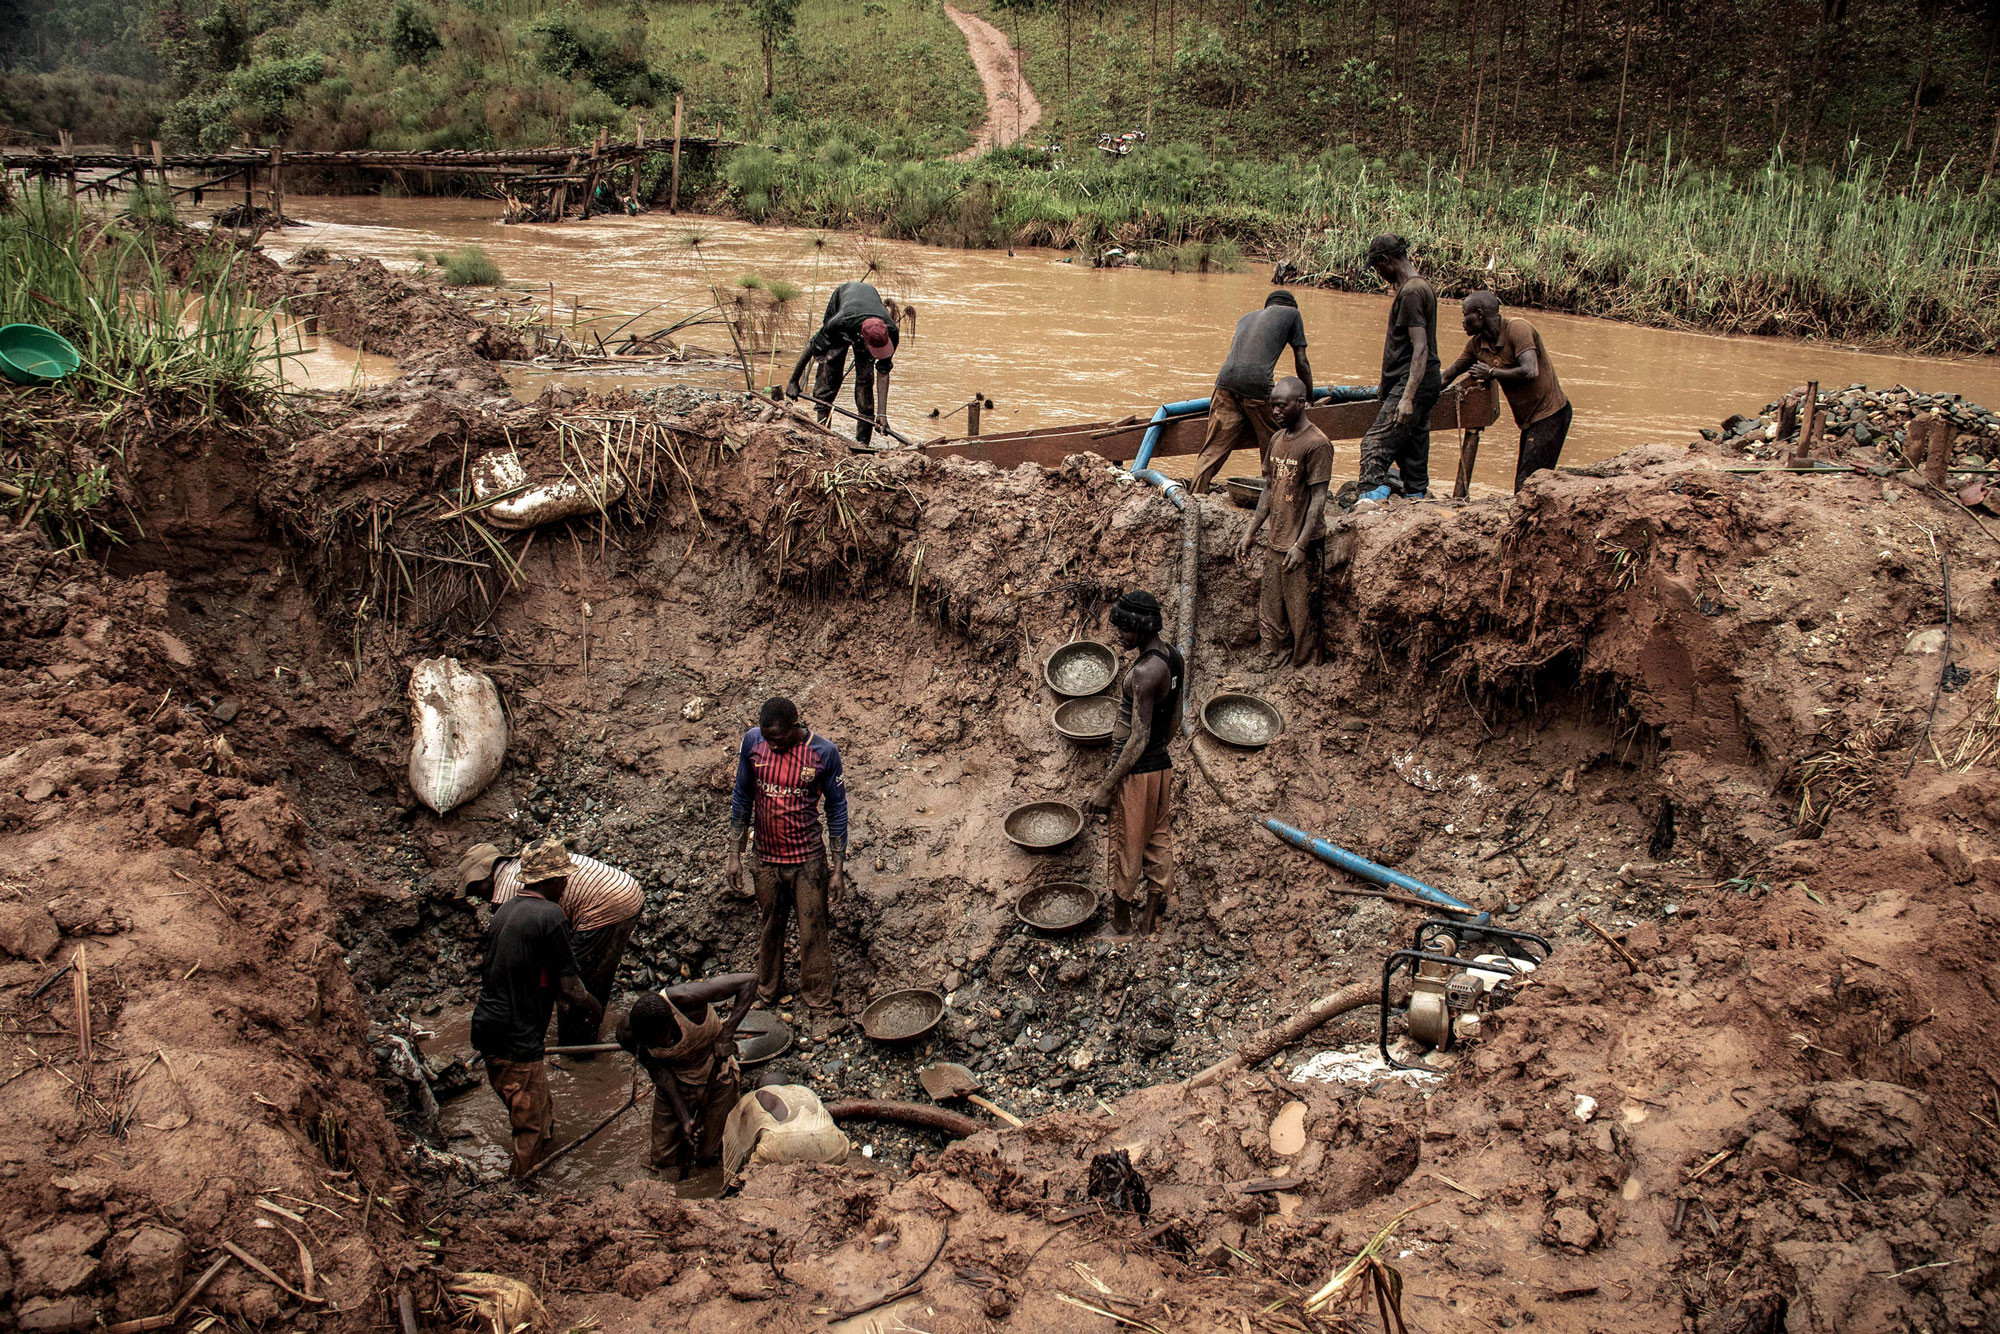 Bambissa, RDC, février 2020. Des orpailleurs extraient l’or des sédiments alluviaux de la rivière Nizi. La plupart des massacres en Ituri ont leur origine dans la compétition pour les mines d’or, selon l’ONG Human Rights Watch. Les mines locales sont une source de financement pour les ex-rebelles, les politiciens et les hauts gradés congolais faisant la contrebande de l’or dans les pays voisins, l’Ouganda et le Sud-Soudan. Le minerai est extrait par des coopératives artisanales utilisant des outils et des techniques rudimentaires. La plupart d’entre elles, à l’instar des compagnies minières, ne rapportent pas leurs chiffres de production et de grandes quantités de minerais sont ainsi mises illégalement sur le marché, ce qui crée une « fraude massive », écrit l’agence Reuters. Mais les mesures prises pour endiguer l’épidémie de coronavirus ont rompu les chaînes d’approvisionnement dont dépendent les orpailleurs et asséché leurs sources financières, causant un effondrement des prix locaux de l’or, jusqu’à 40 % du cours mondial. Dans une seule zone de l’Ituri, 70 des 85 négoces en or ont fermé faute d’acheteurs, note l’ONG canadienne Impact, spécialisée dans les ressources naturelles. © Dieudonné Dirole pour la Fondation Carmignac